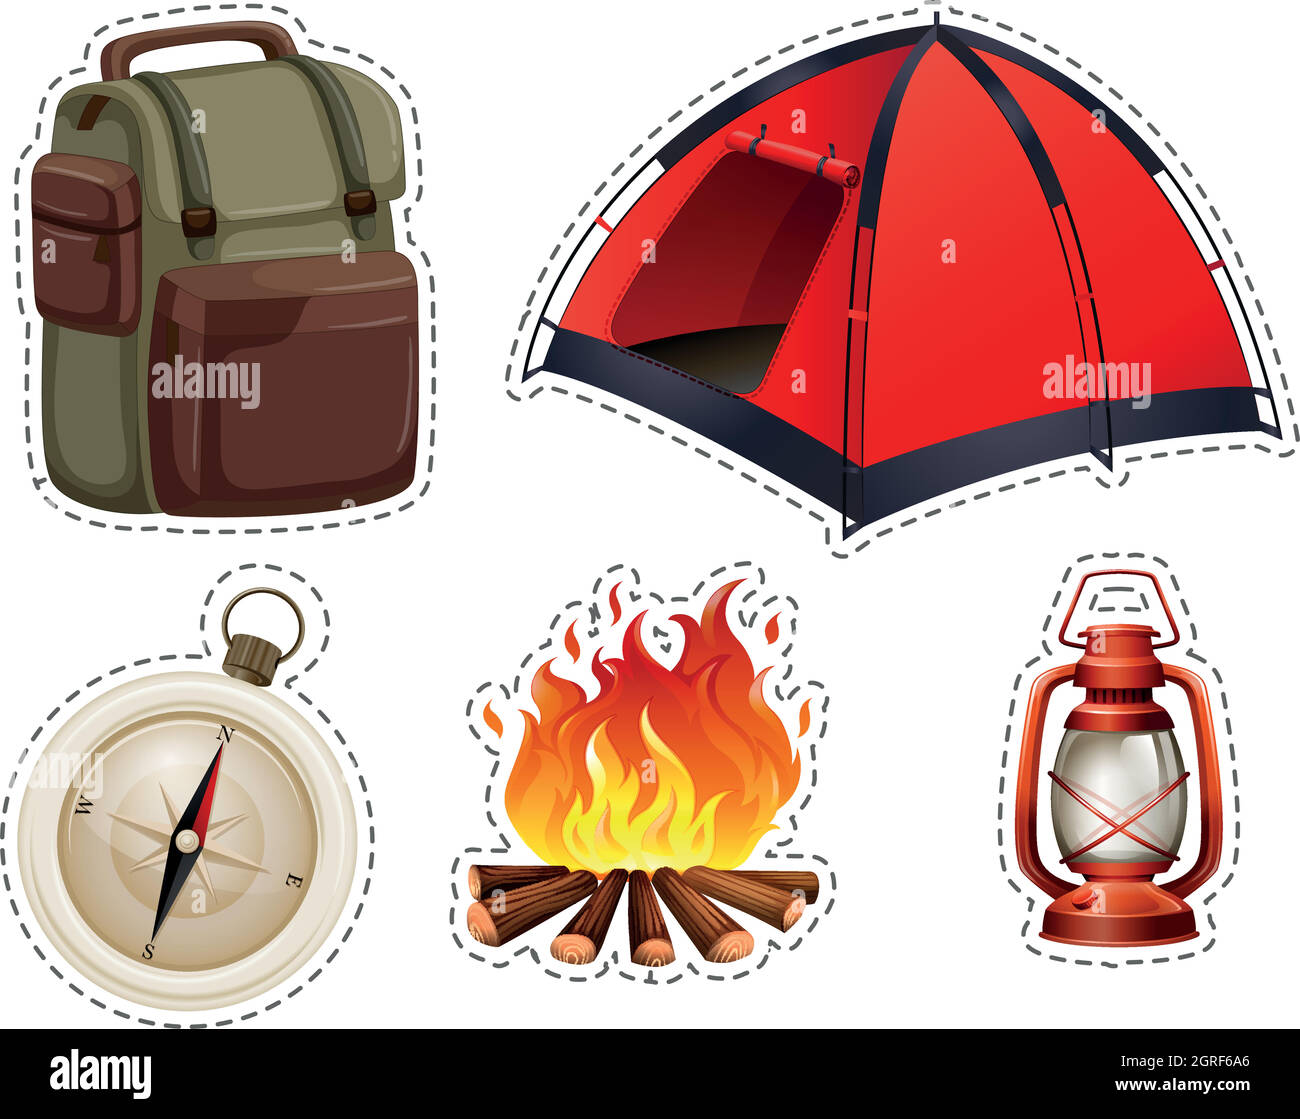 Accesorios de camping imagen de archivo. Imagen de turismo - 224756263